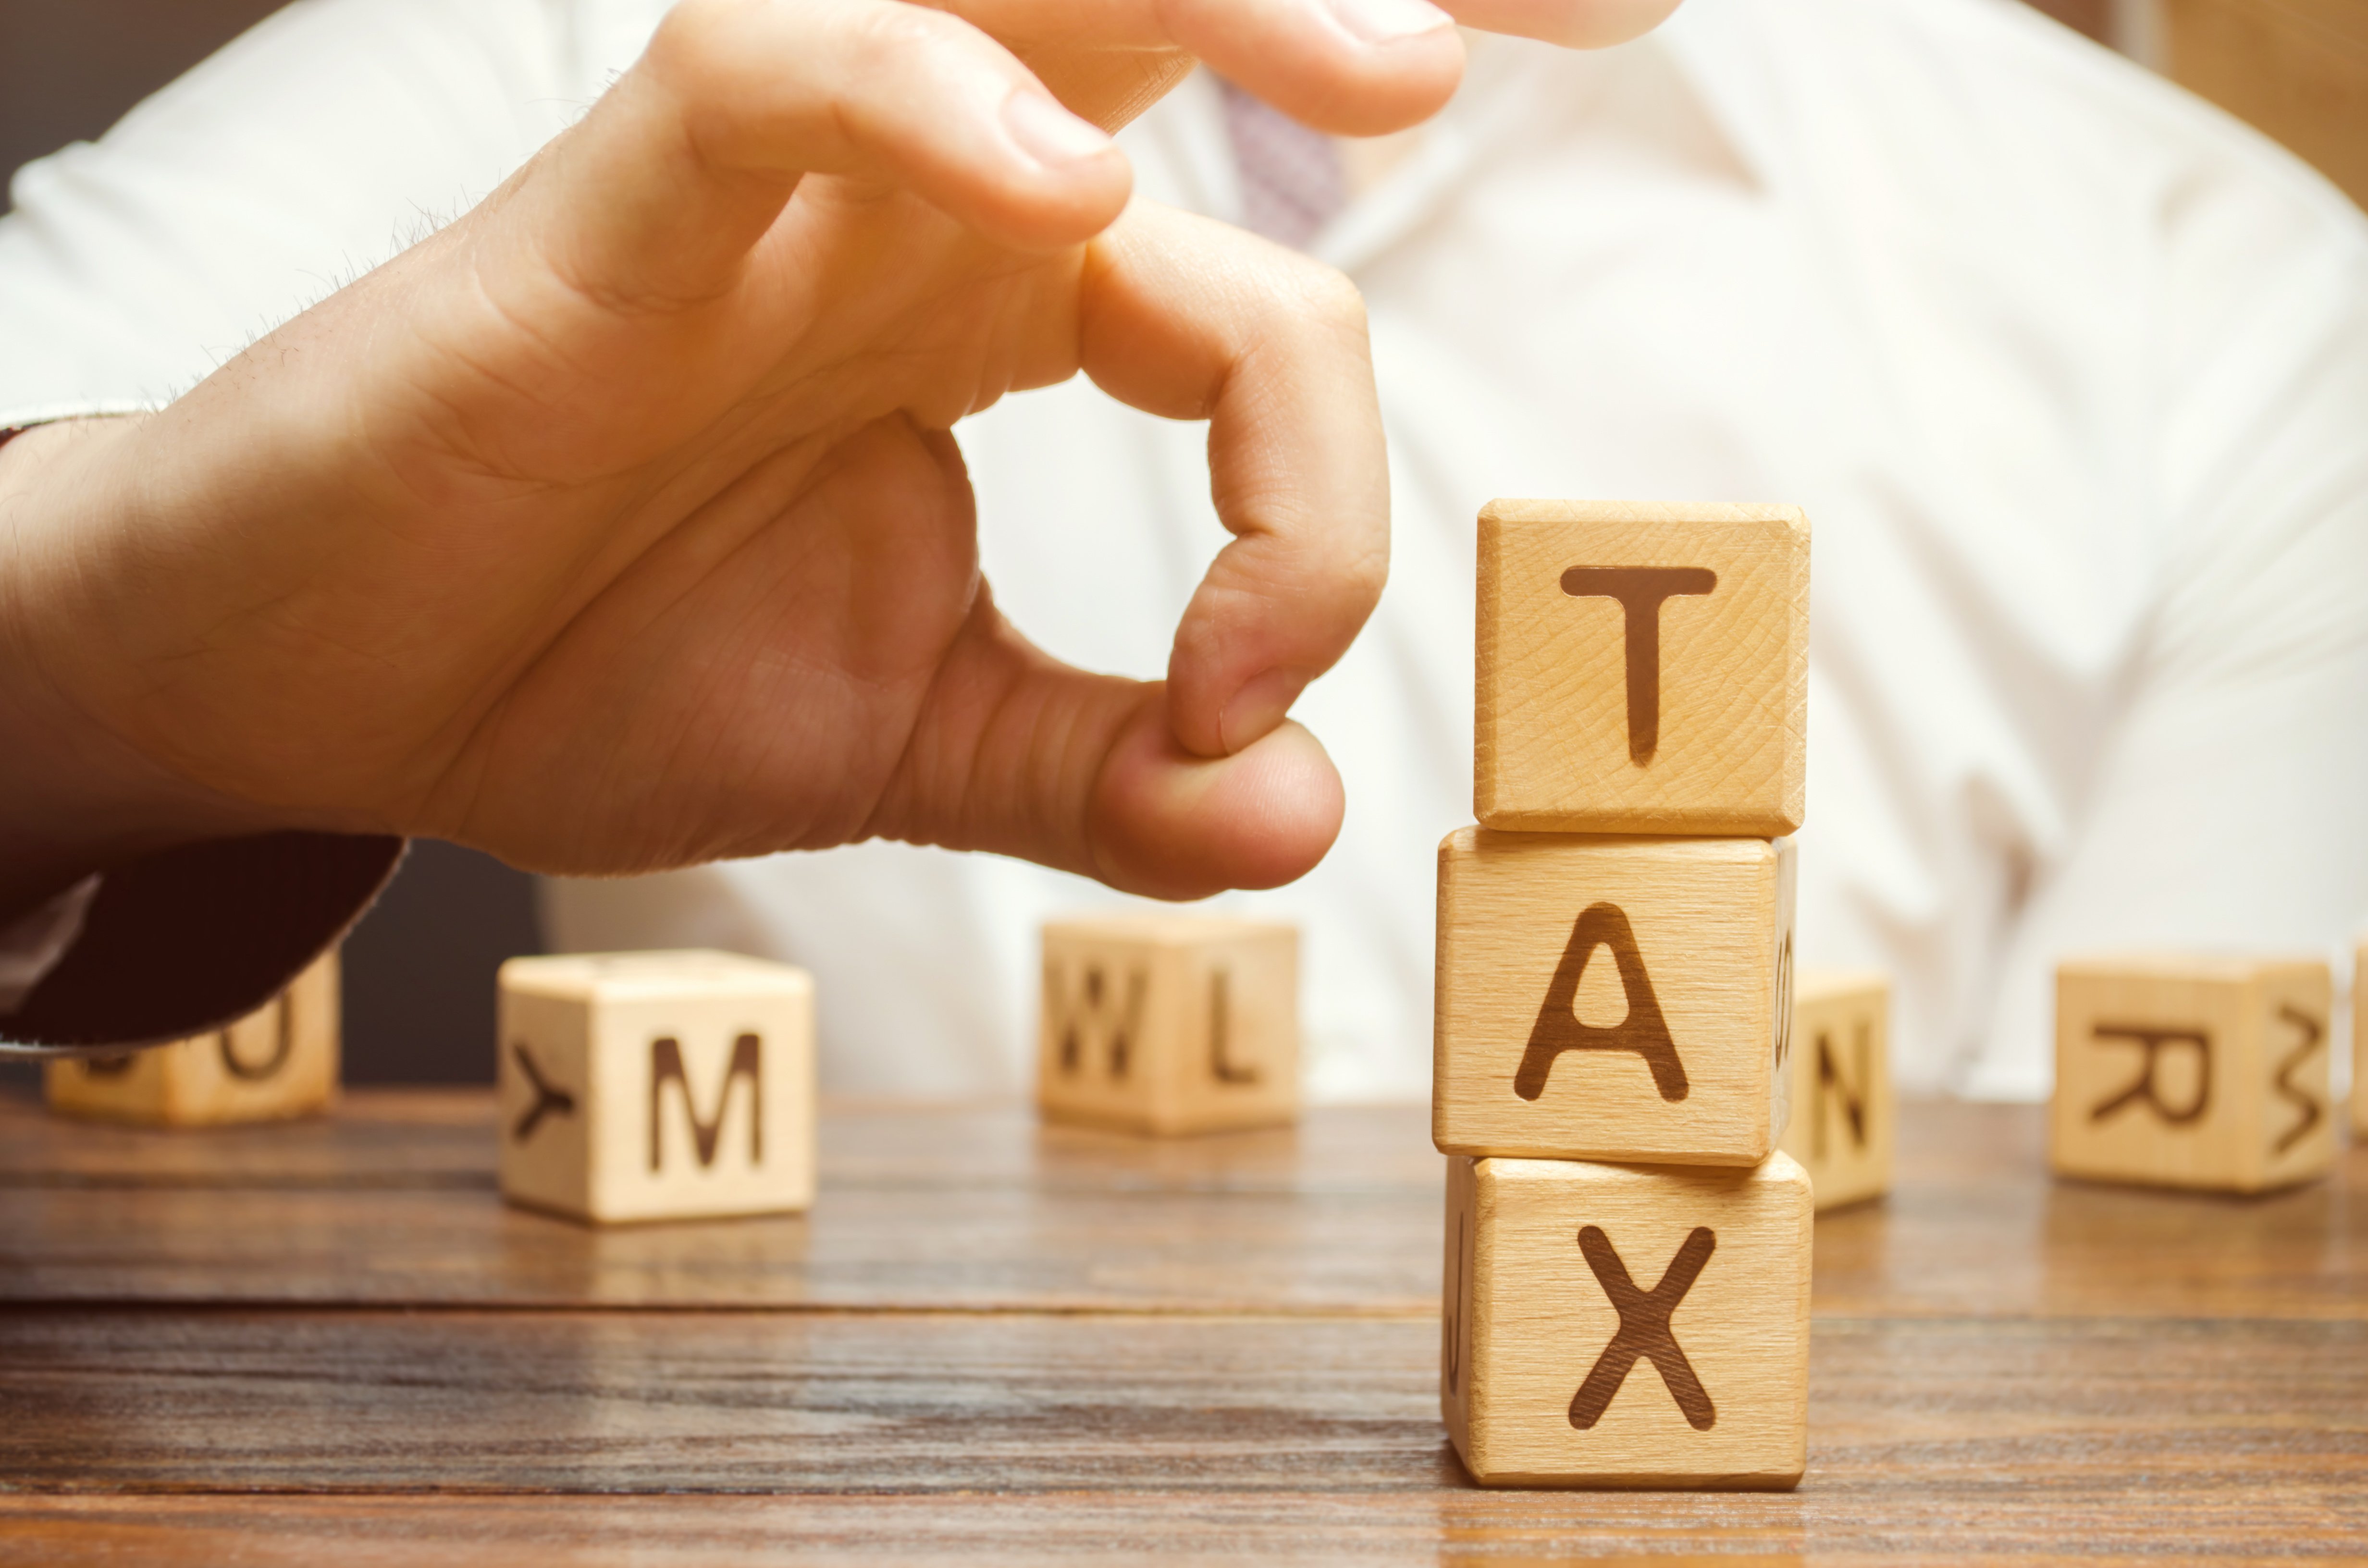 Υπουργείο Ψηφιακής Διακυβέρνησης: Ξεκινά η εφαρμογή του κινήτρου φορολογικής ελάφρυνσης (tax relief) για τις οπτικοακουστικές παραγωγές